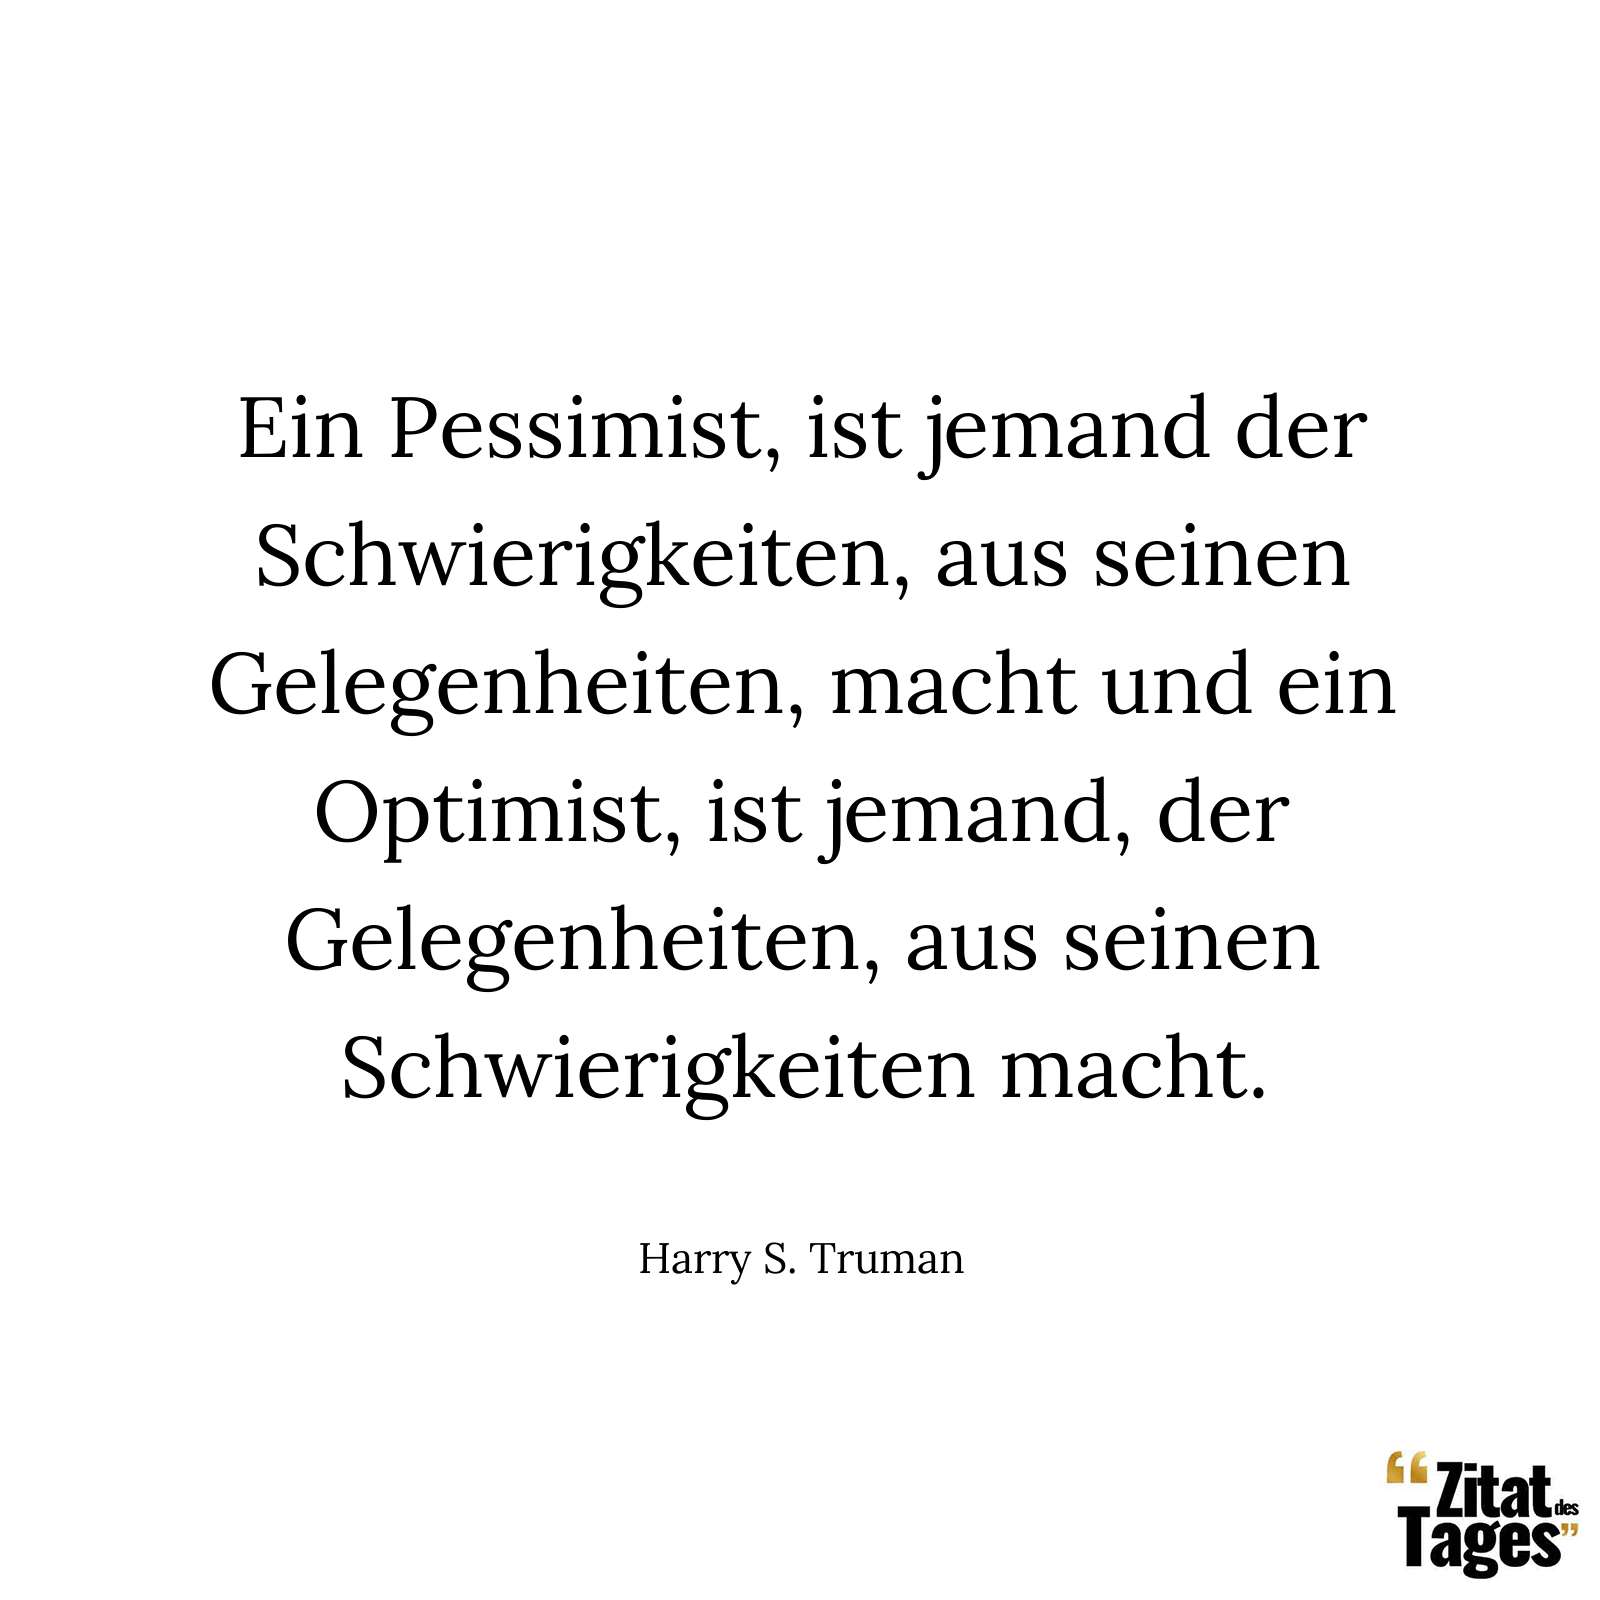 Ein Pessimist, ist jemand der Schwierigkeiten, aus seinen Gelegenheiten, macht und ein Optimist, ist jemand, der Gelegenheiten, aus seinen Schwierigkeiten macht. - Harry S. Truman